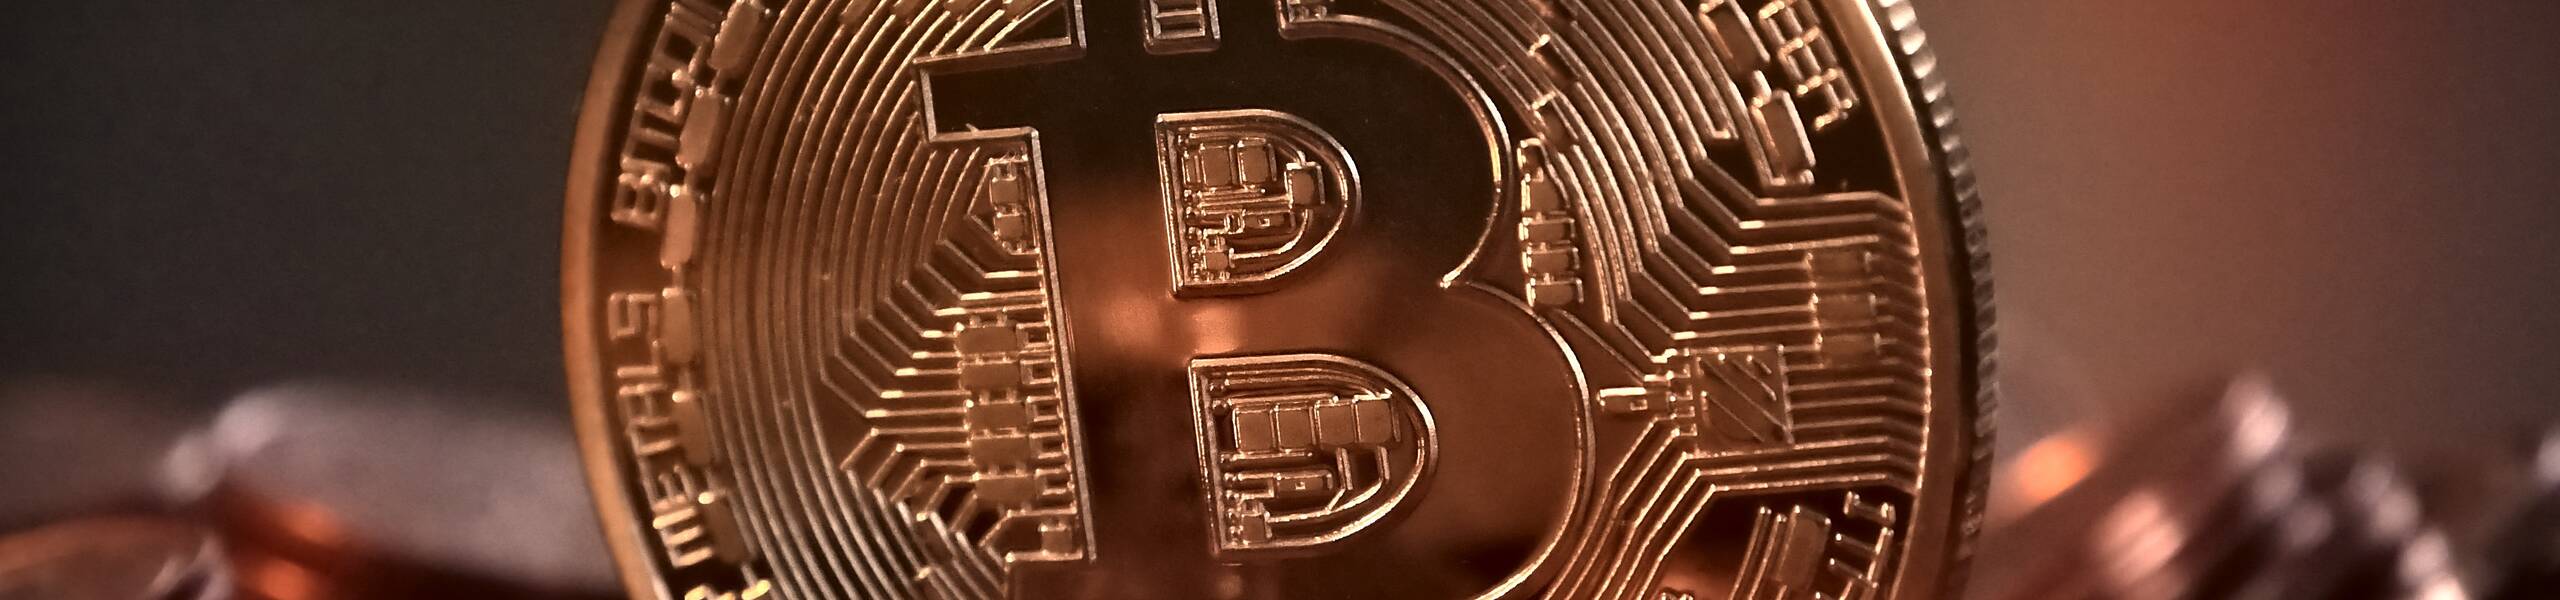 Bitcoin (BTC/USD) strengthening the bearish path